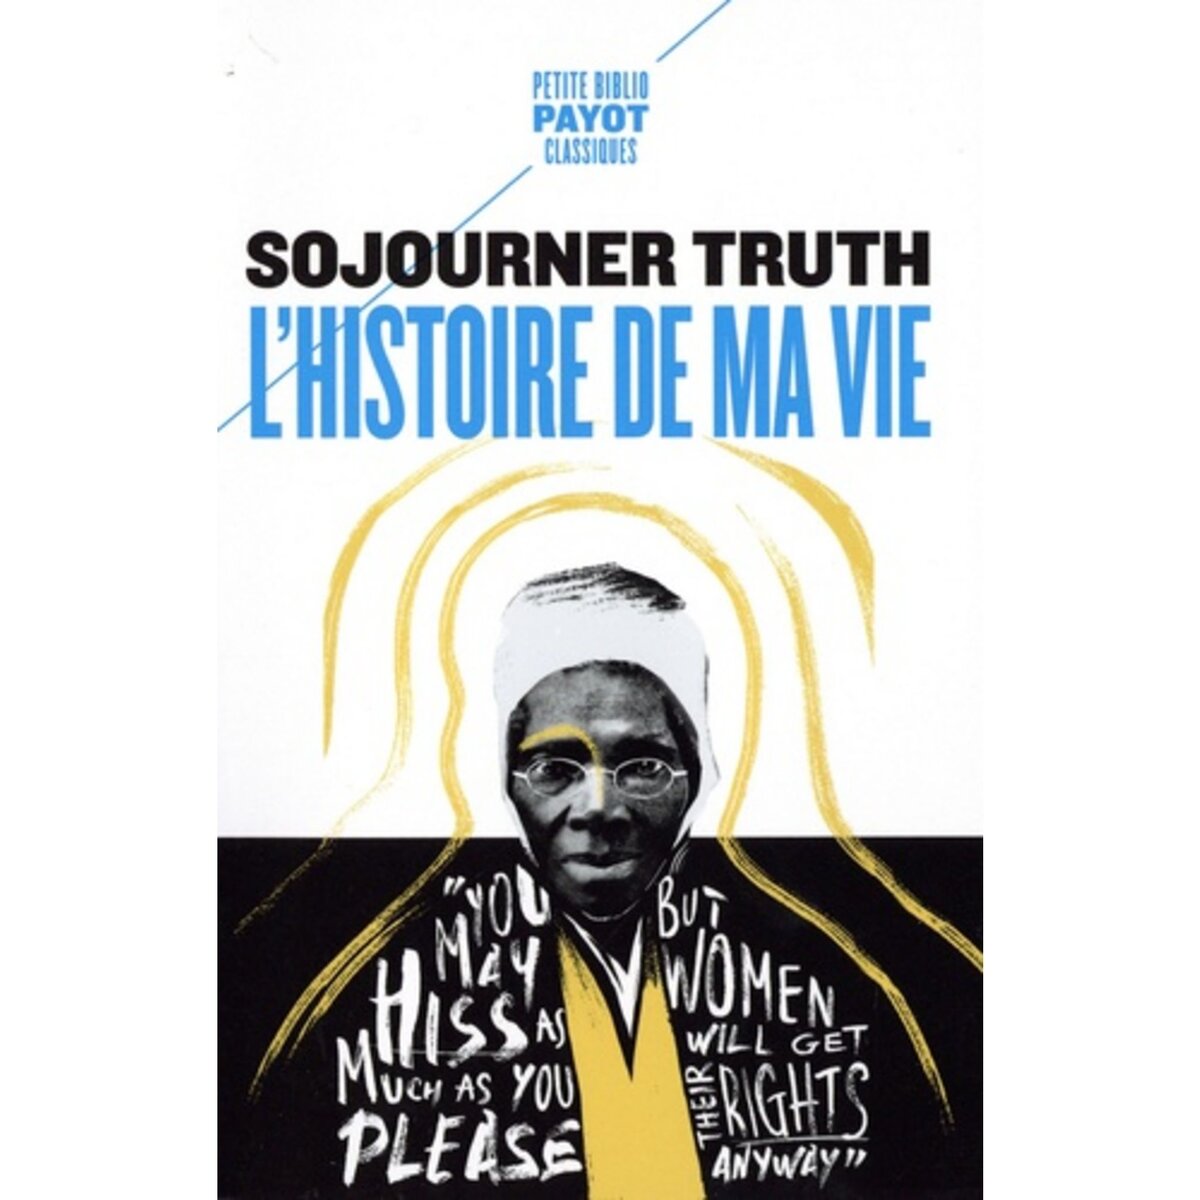  L'HISTOIRE DE MA VIE, Truth Sojourner